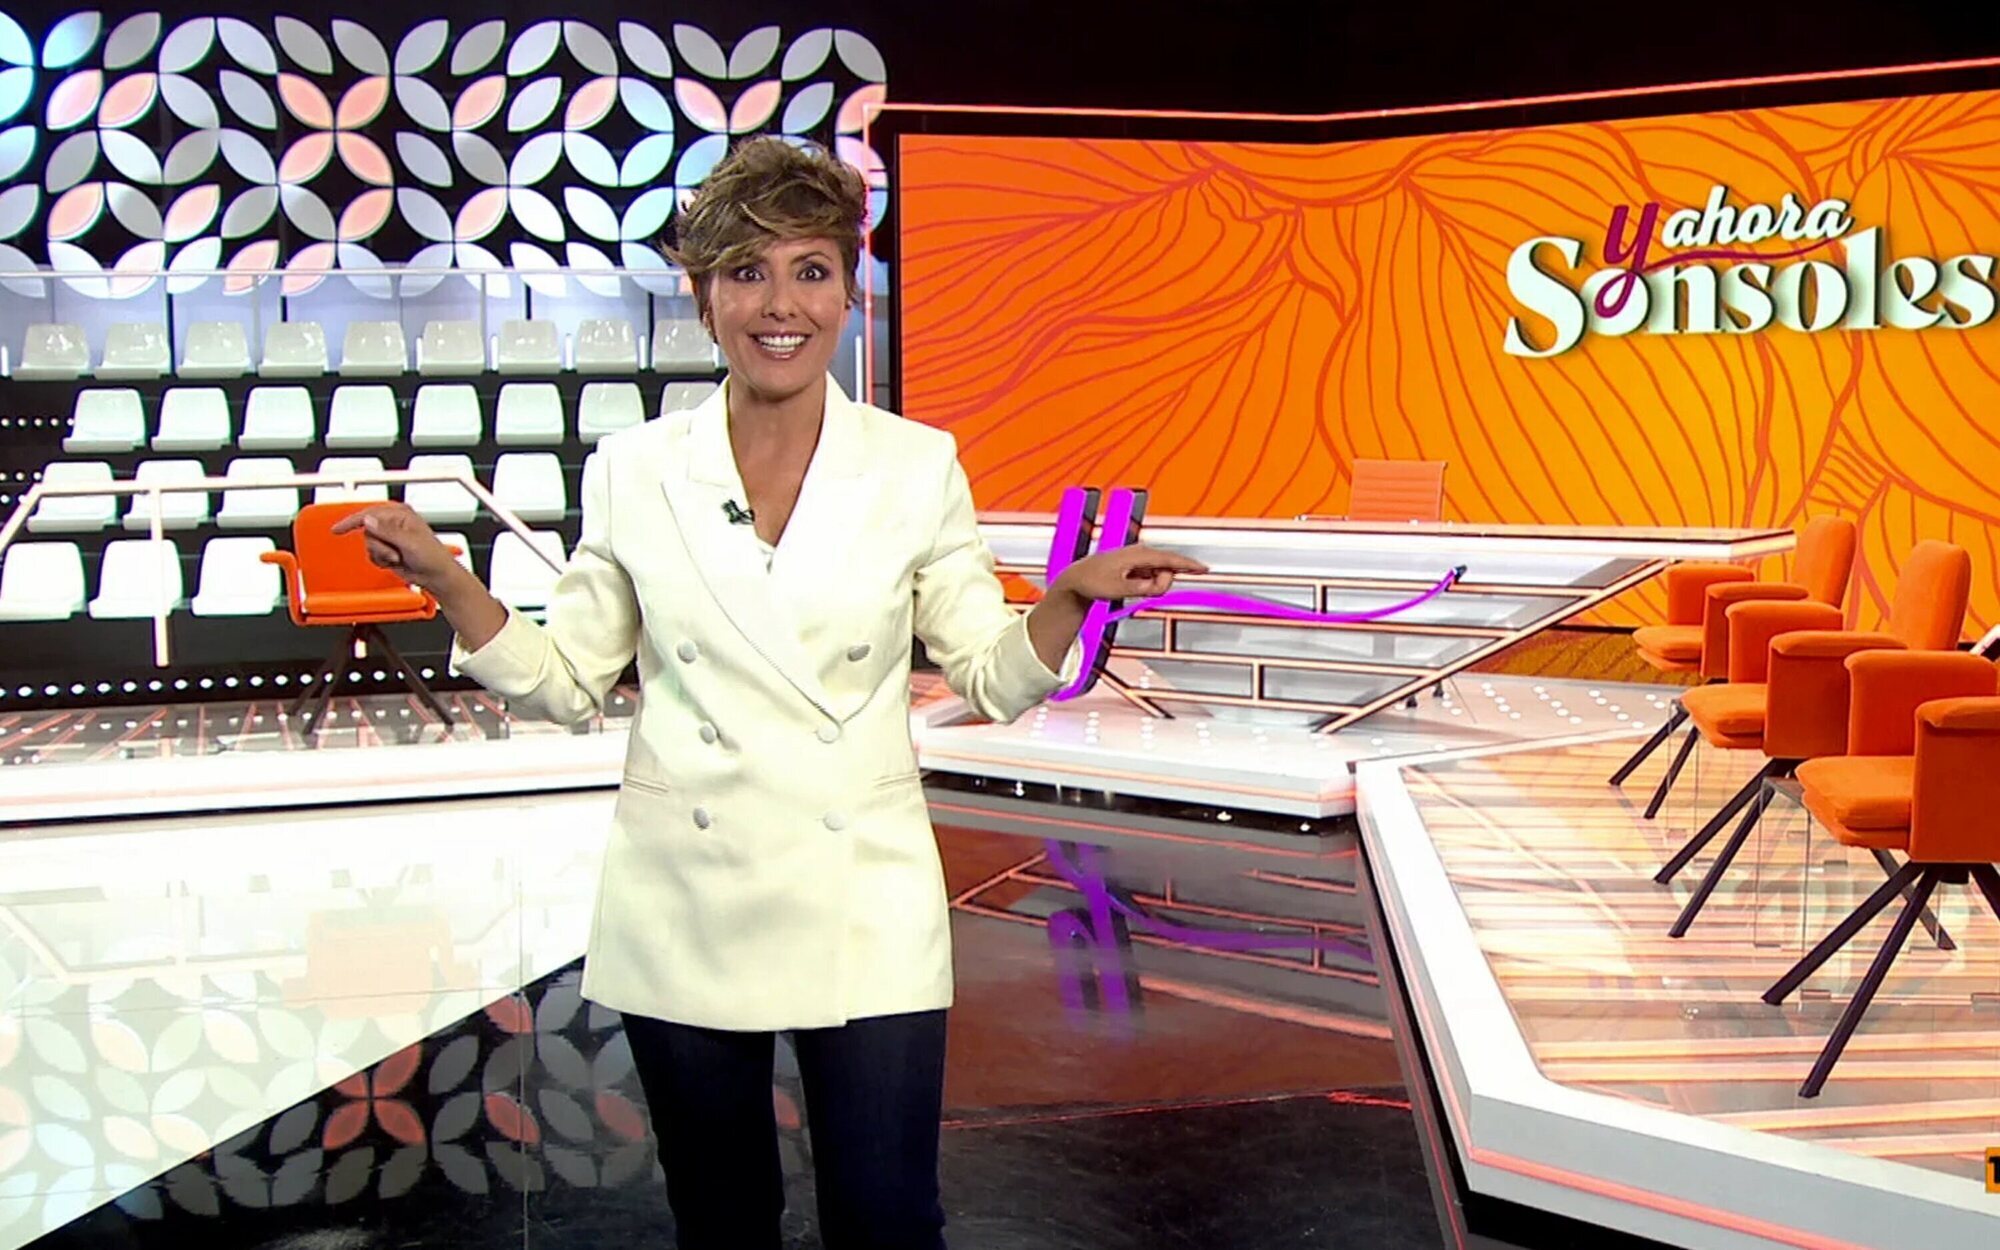 'Y ahora, Sonsoles' entra al juego de pullas con Telecinco: "Se me han quitado las ganas de café"